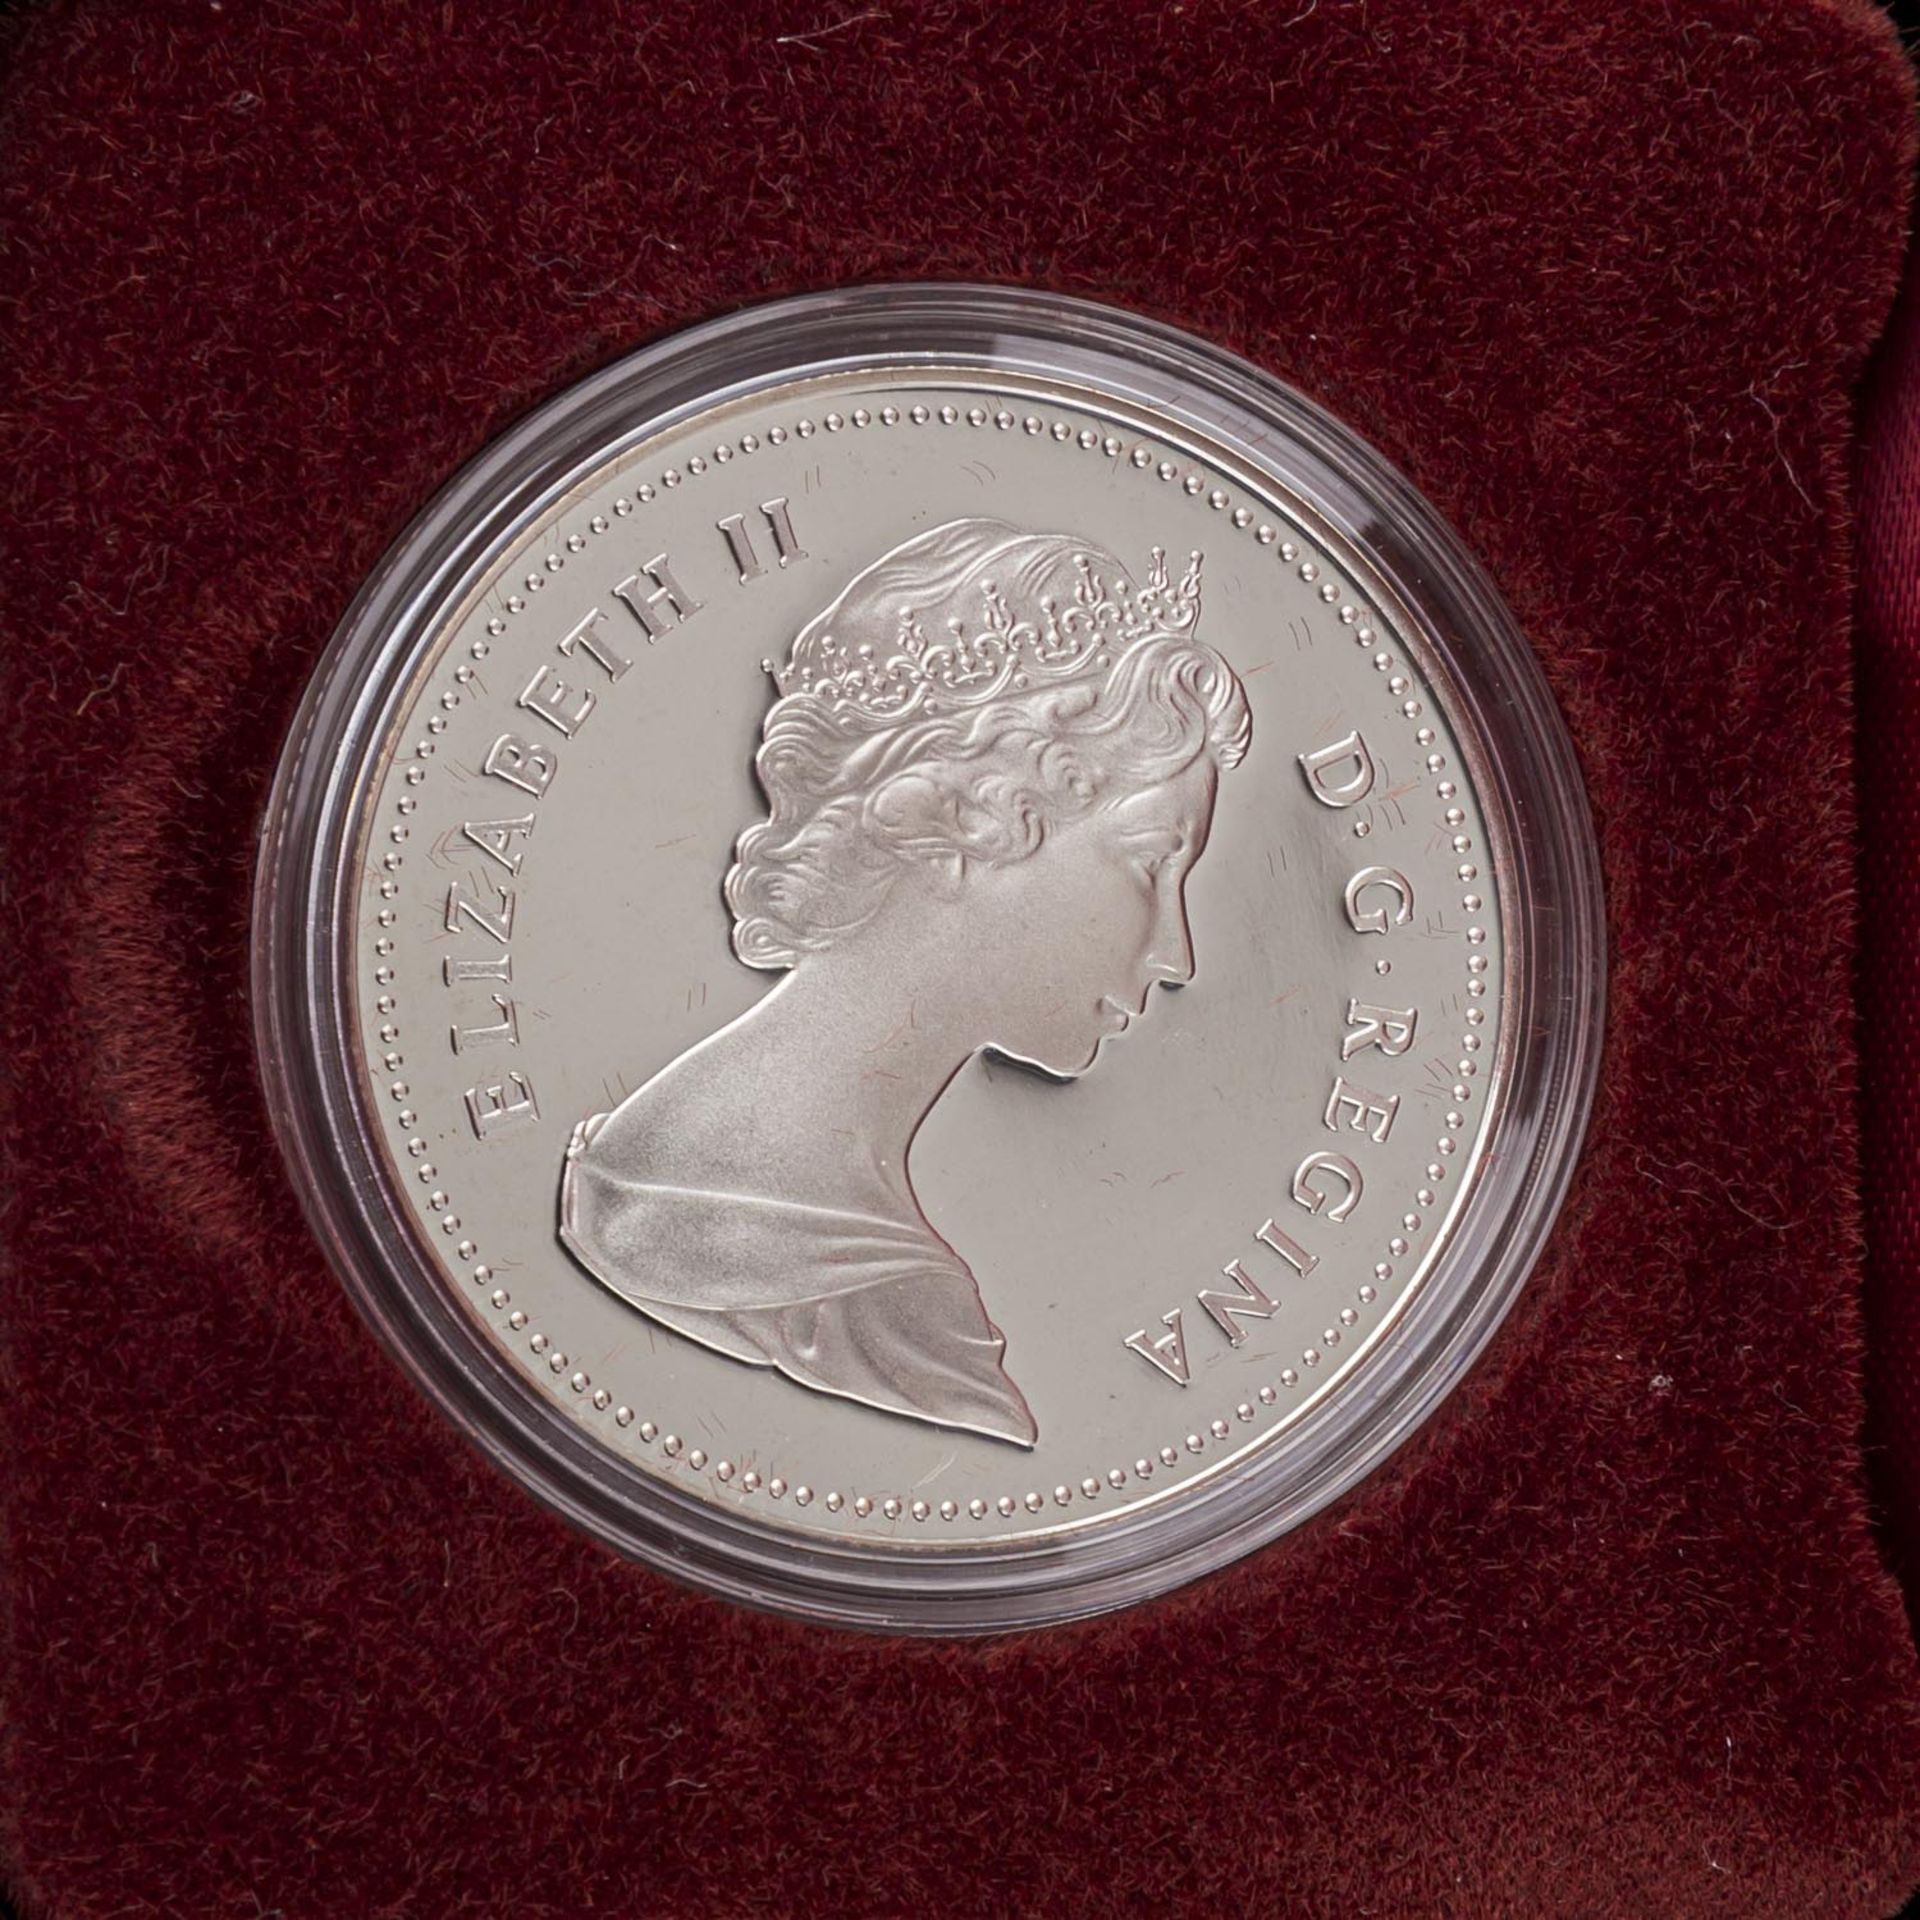 Gemischtes Lot mit Silber und etwas GOLDin Form von Schweuz 20 Franken Vreneli 1935 LB und Türkei - Bild 7 aus 13